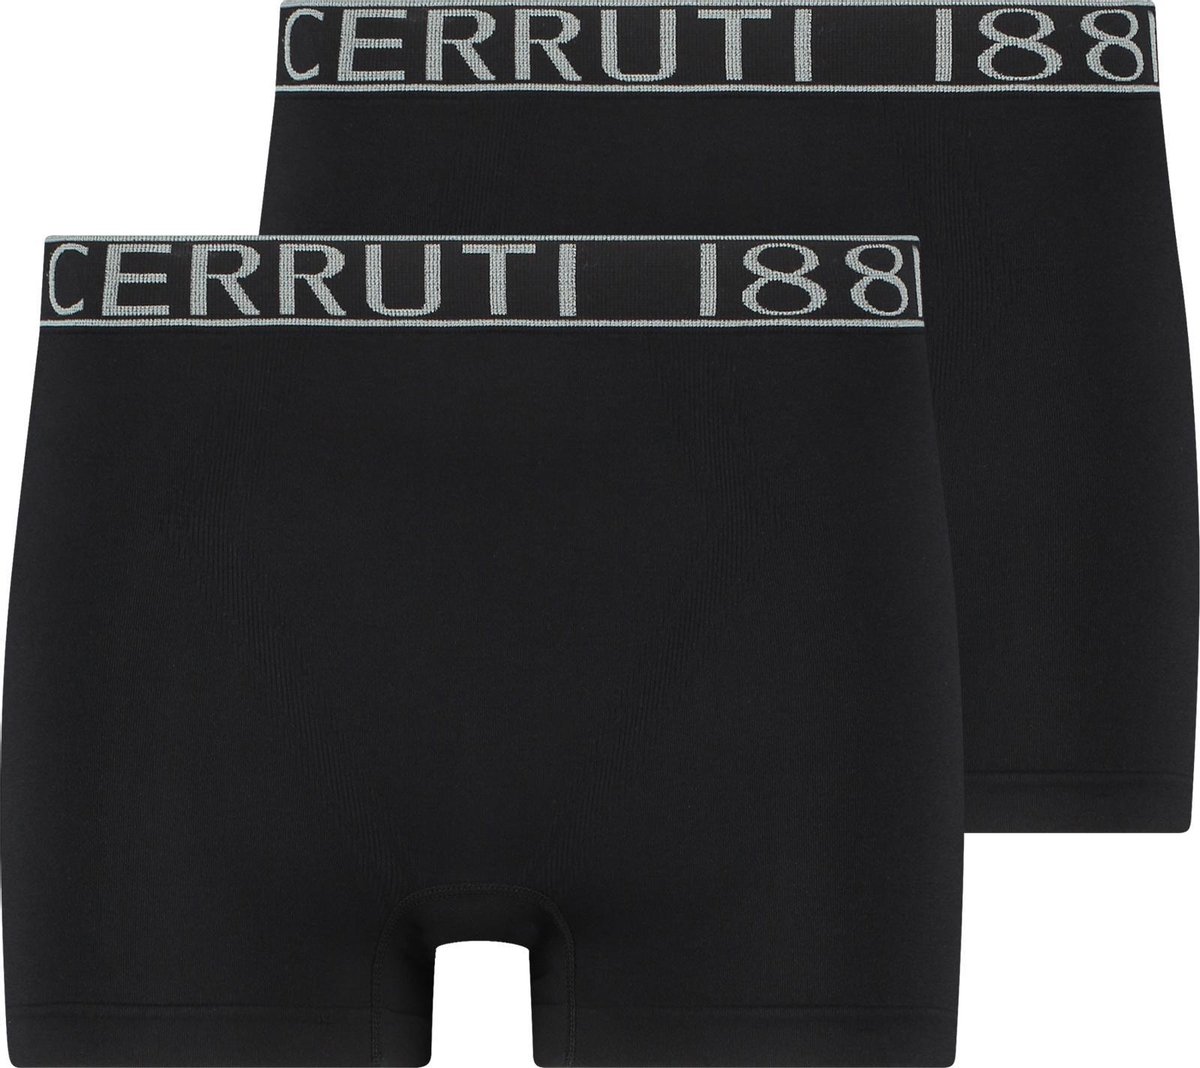 Cerruti 1881 Boxershort 2 pack zwart maat L